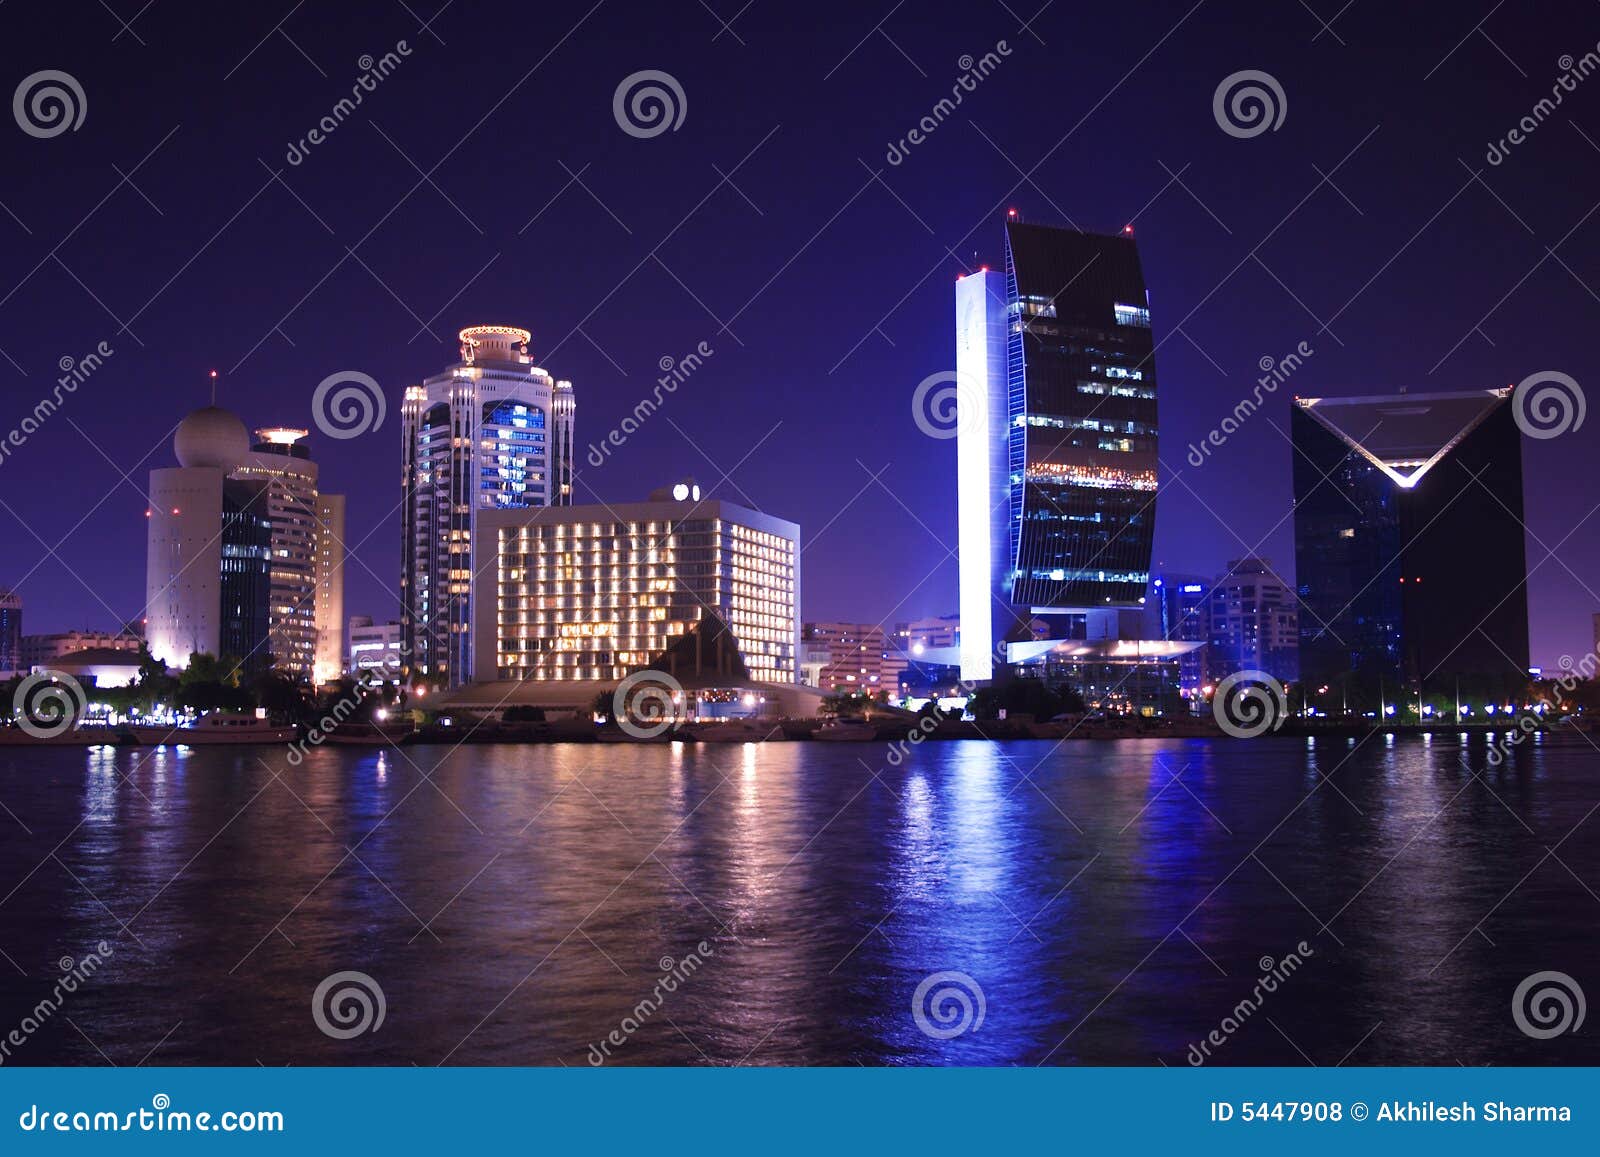 Dubai At Night United Arab Emirates Stock Photo Image Of Arabic Middle 5447908